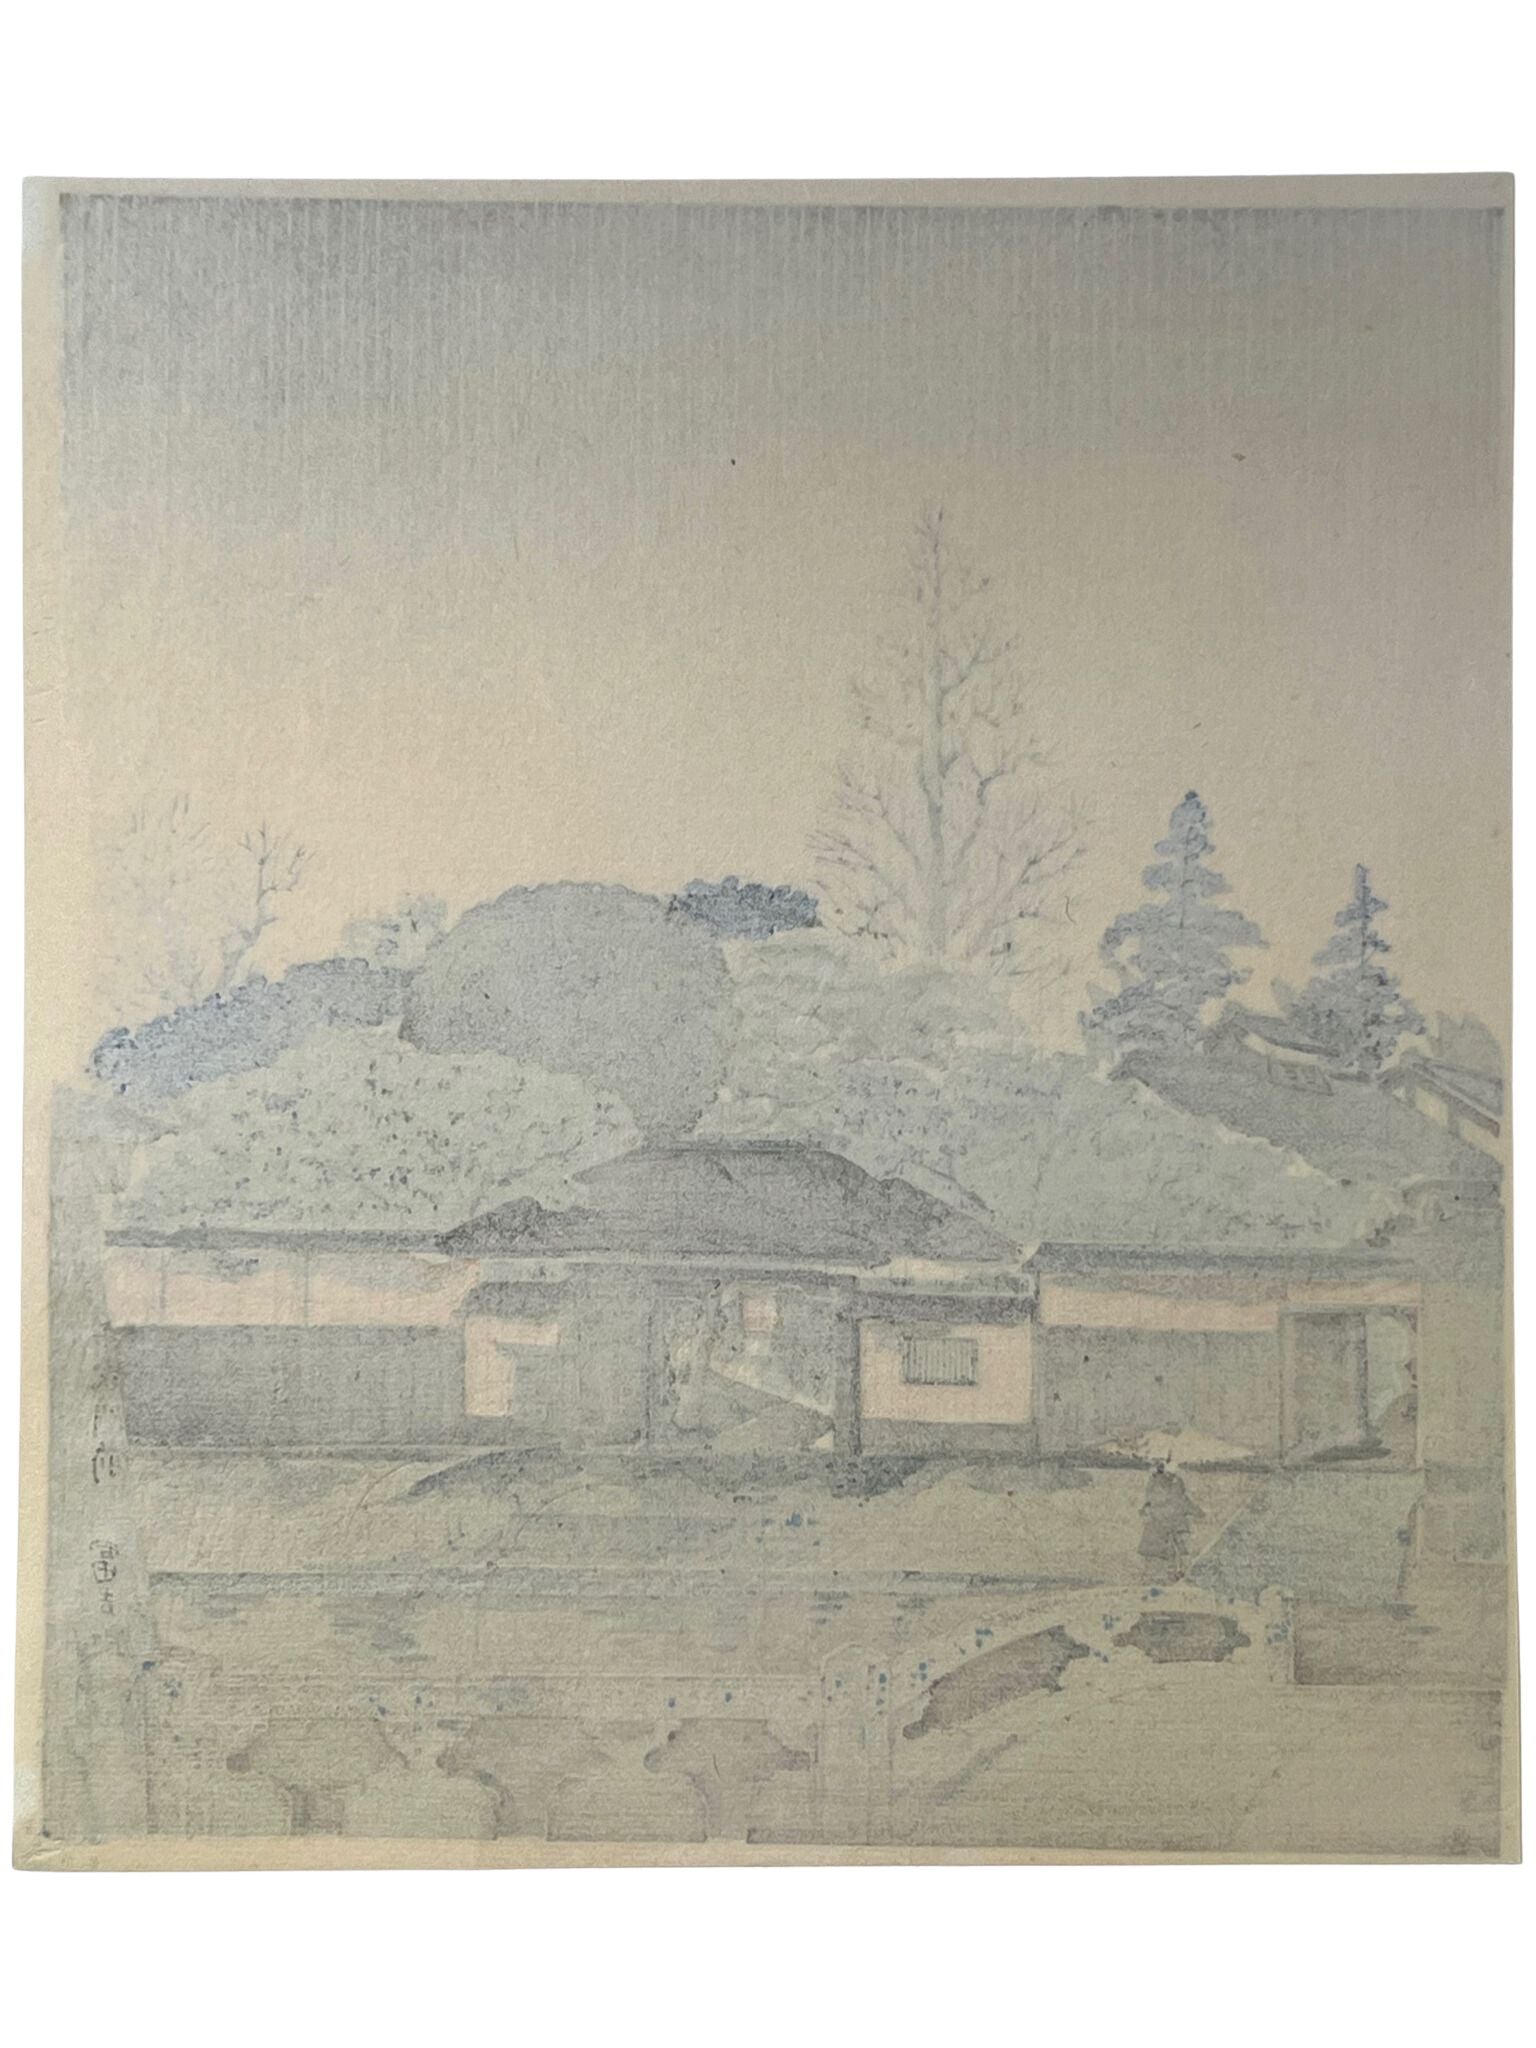 Estampe Japonaise de Tokuriki Tomikichiro | Série des 12 mois à Kyoto, juin, sado senke, dos